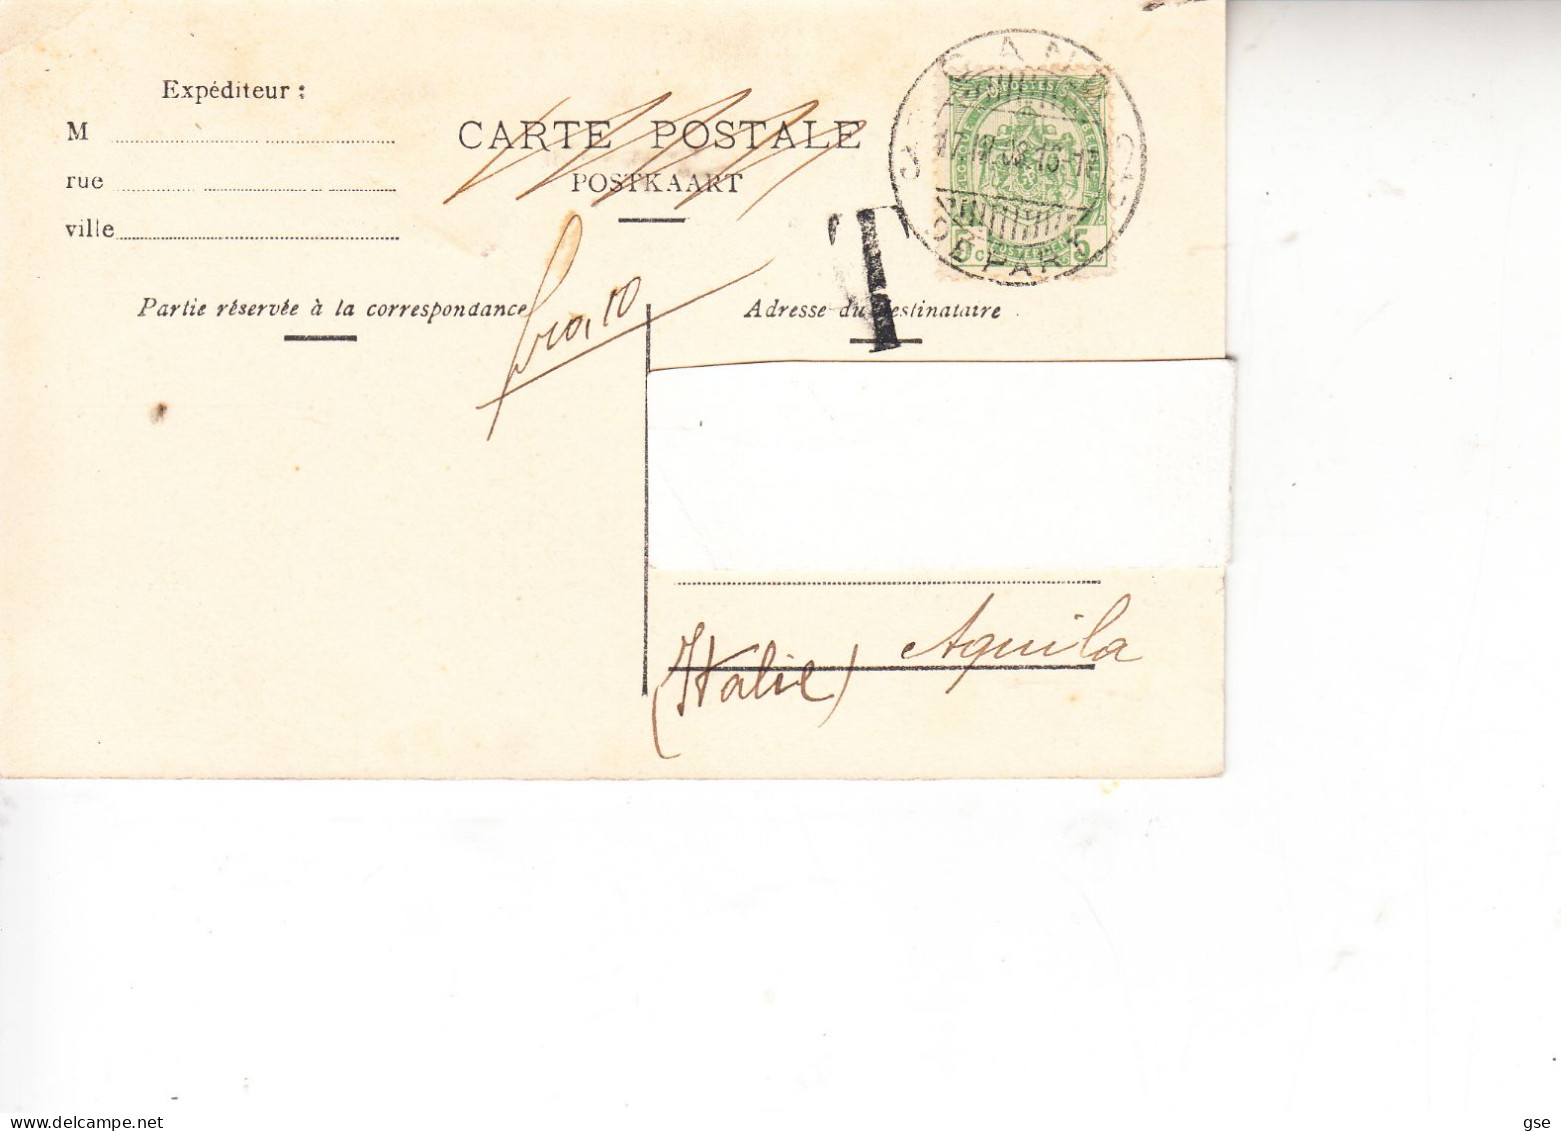 BELGIO  1908 - Gand - La Lys  Au Chateau Des Comtes - Other & Unclassified